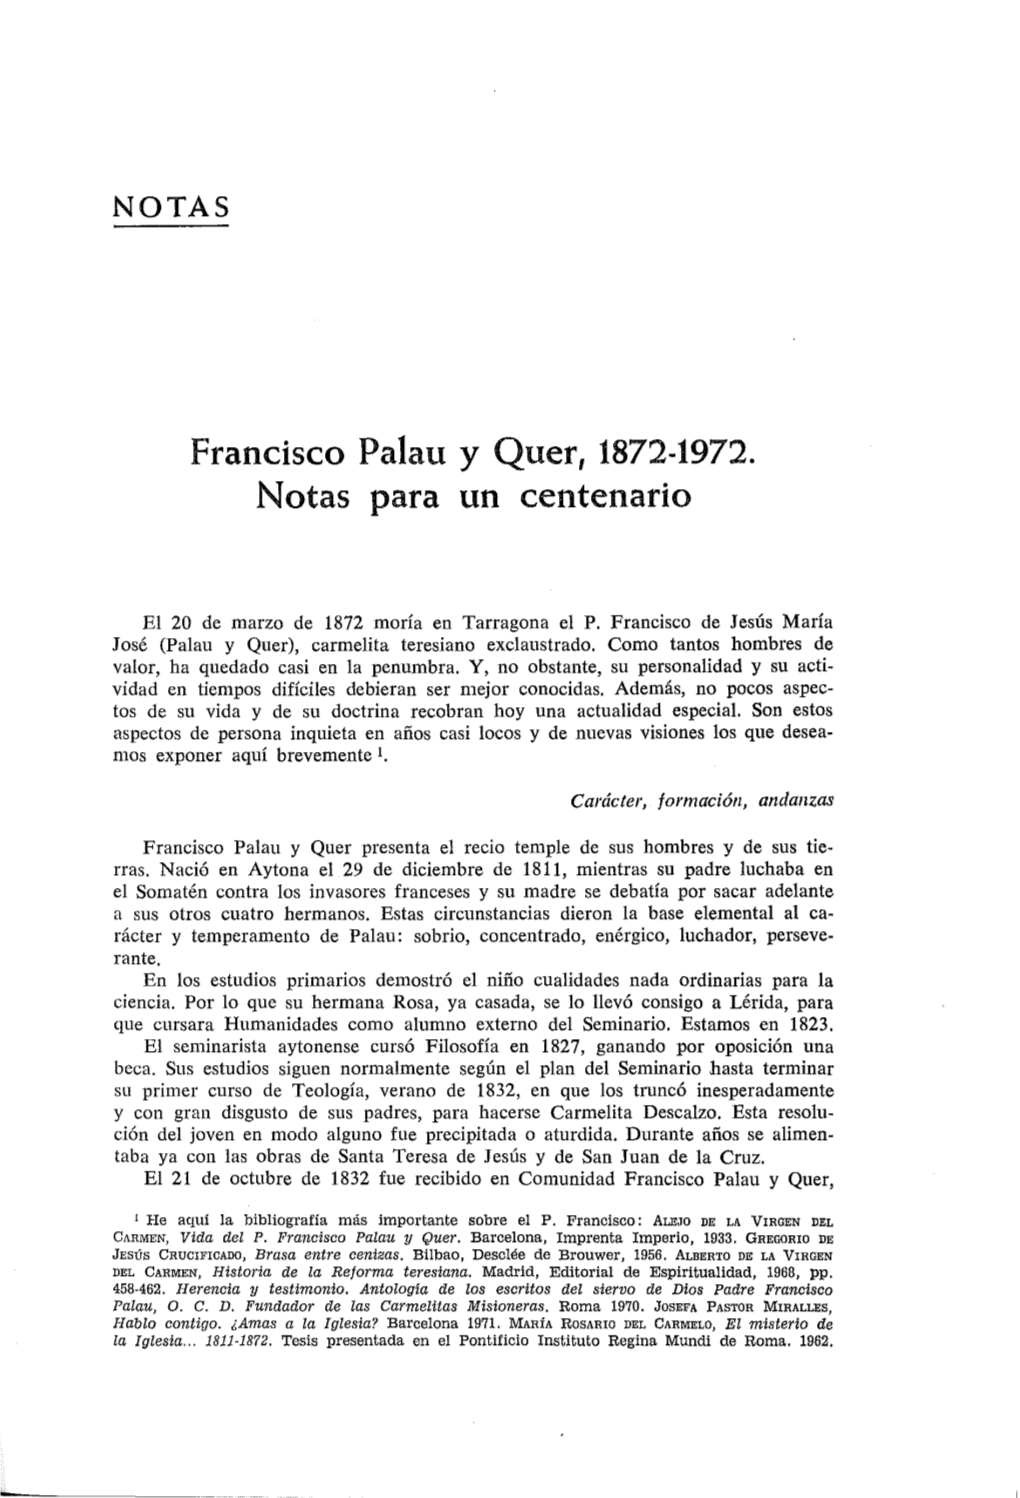 Francisco Palau Y Quer, 1872-1972. Notas Para Un Centenario